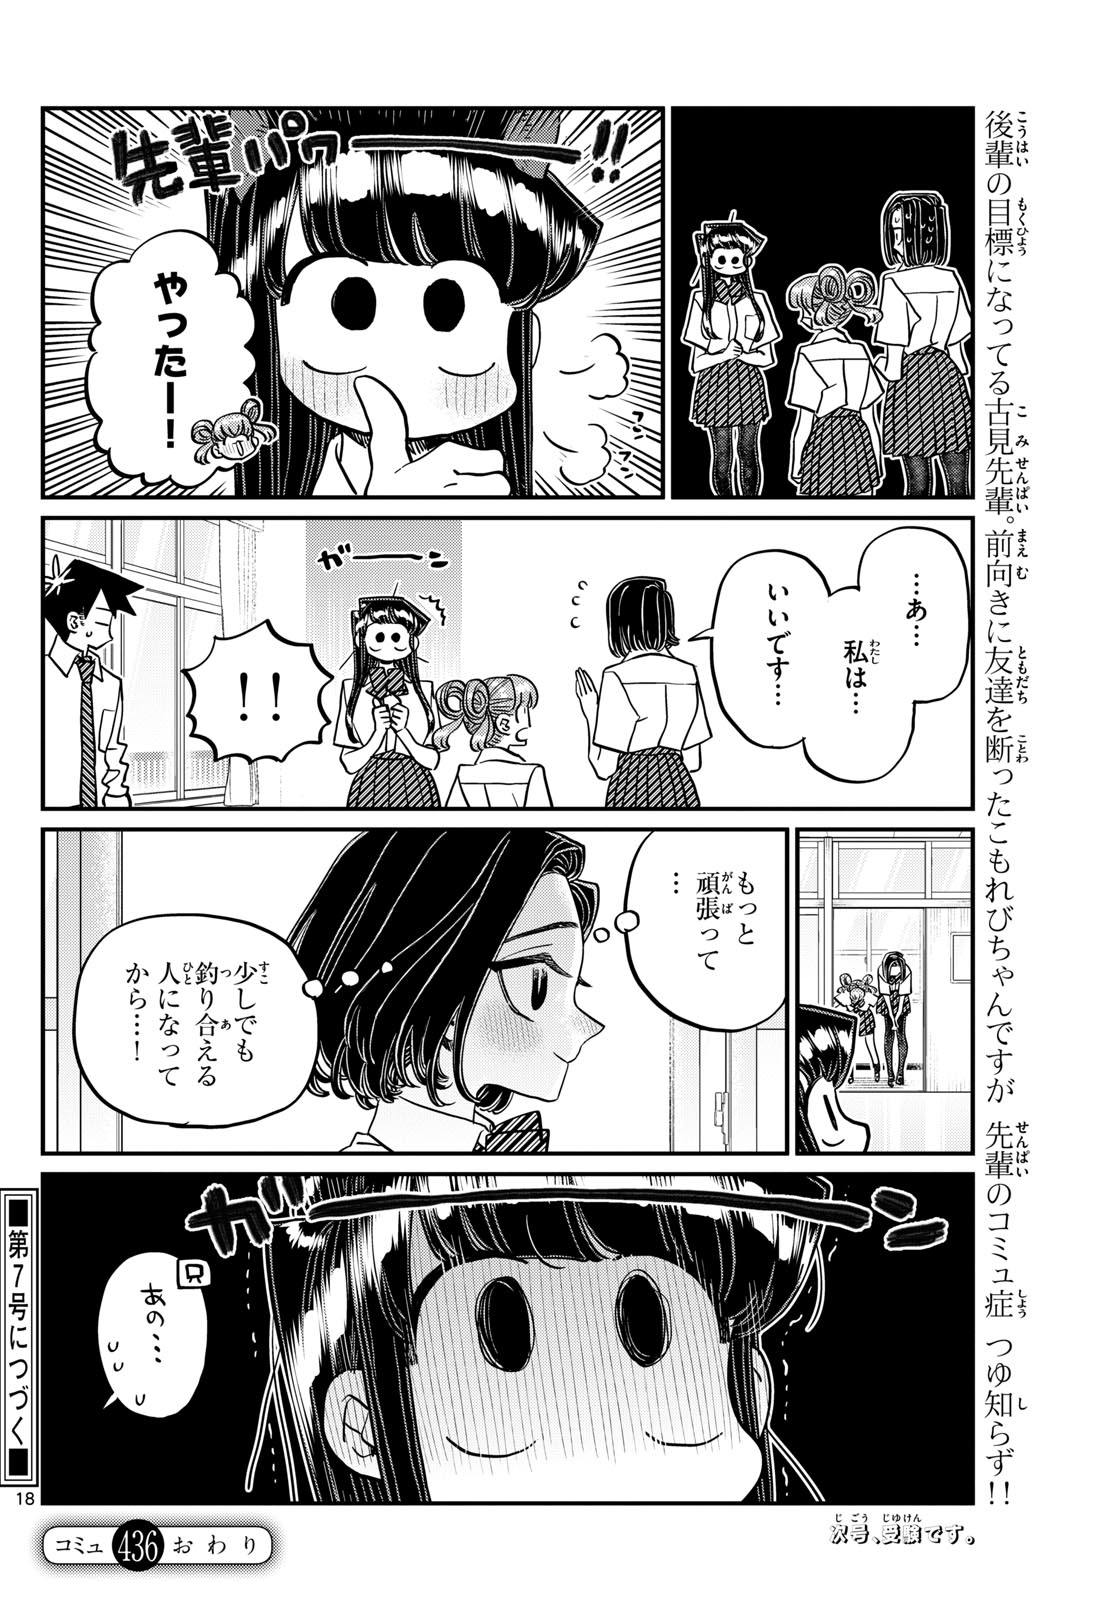 Komi-san wa Komyushou Desu - Chapter 435 - Page 18